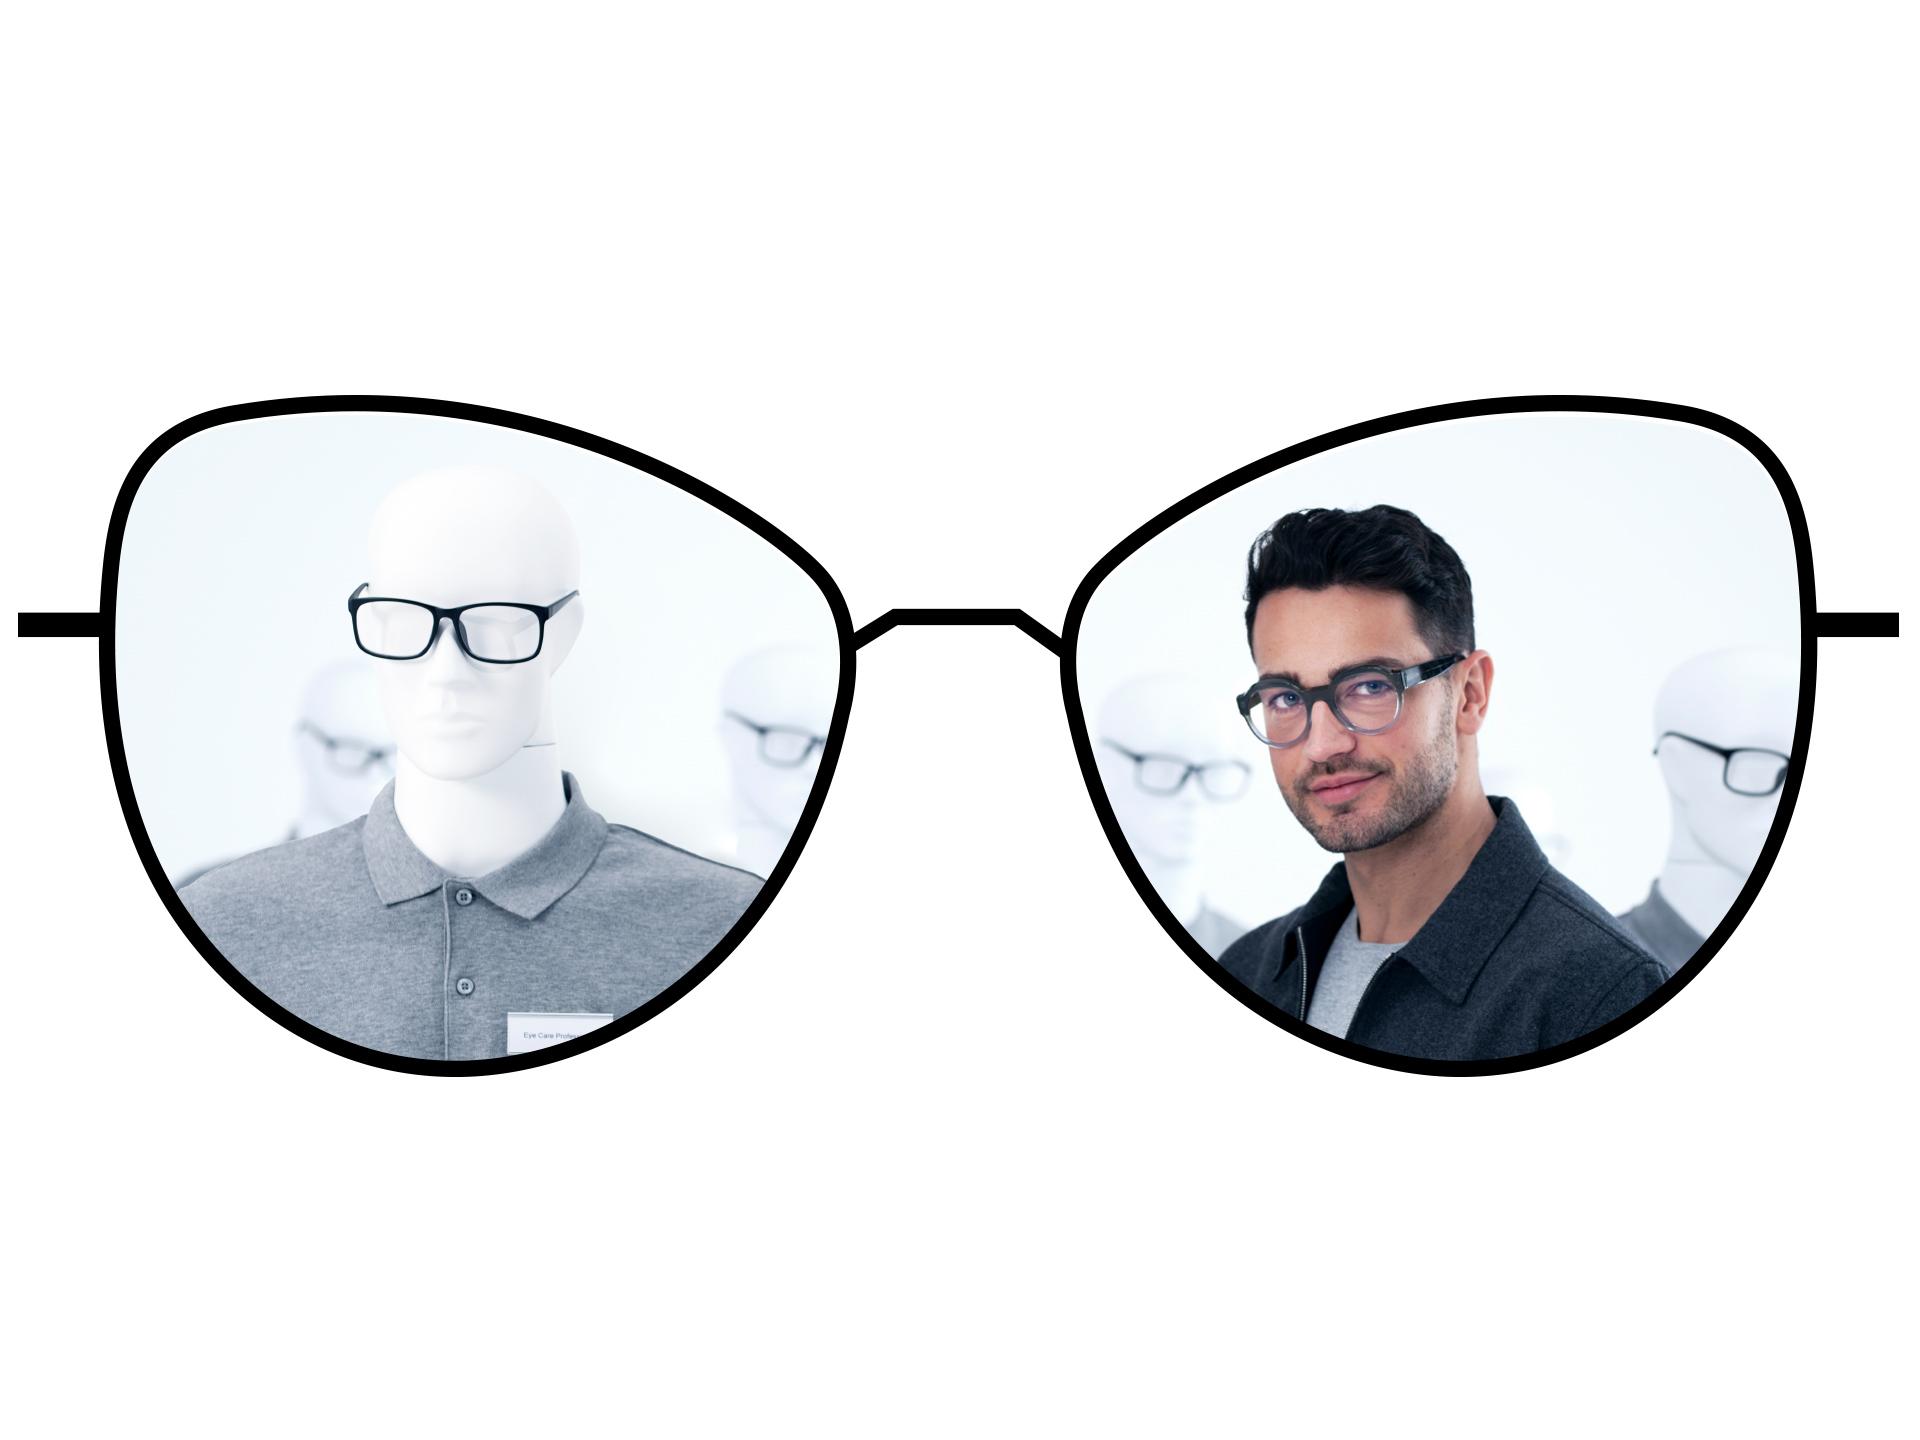 Ilustração de óculos que mostra as zonas desfocadas das lentes monofocais tradicionais em comparação com as amplas zonas nítidas das lentes monofocais ZEISS ClearView